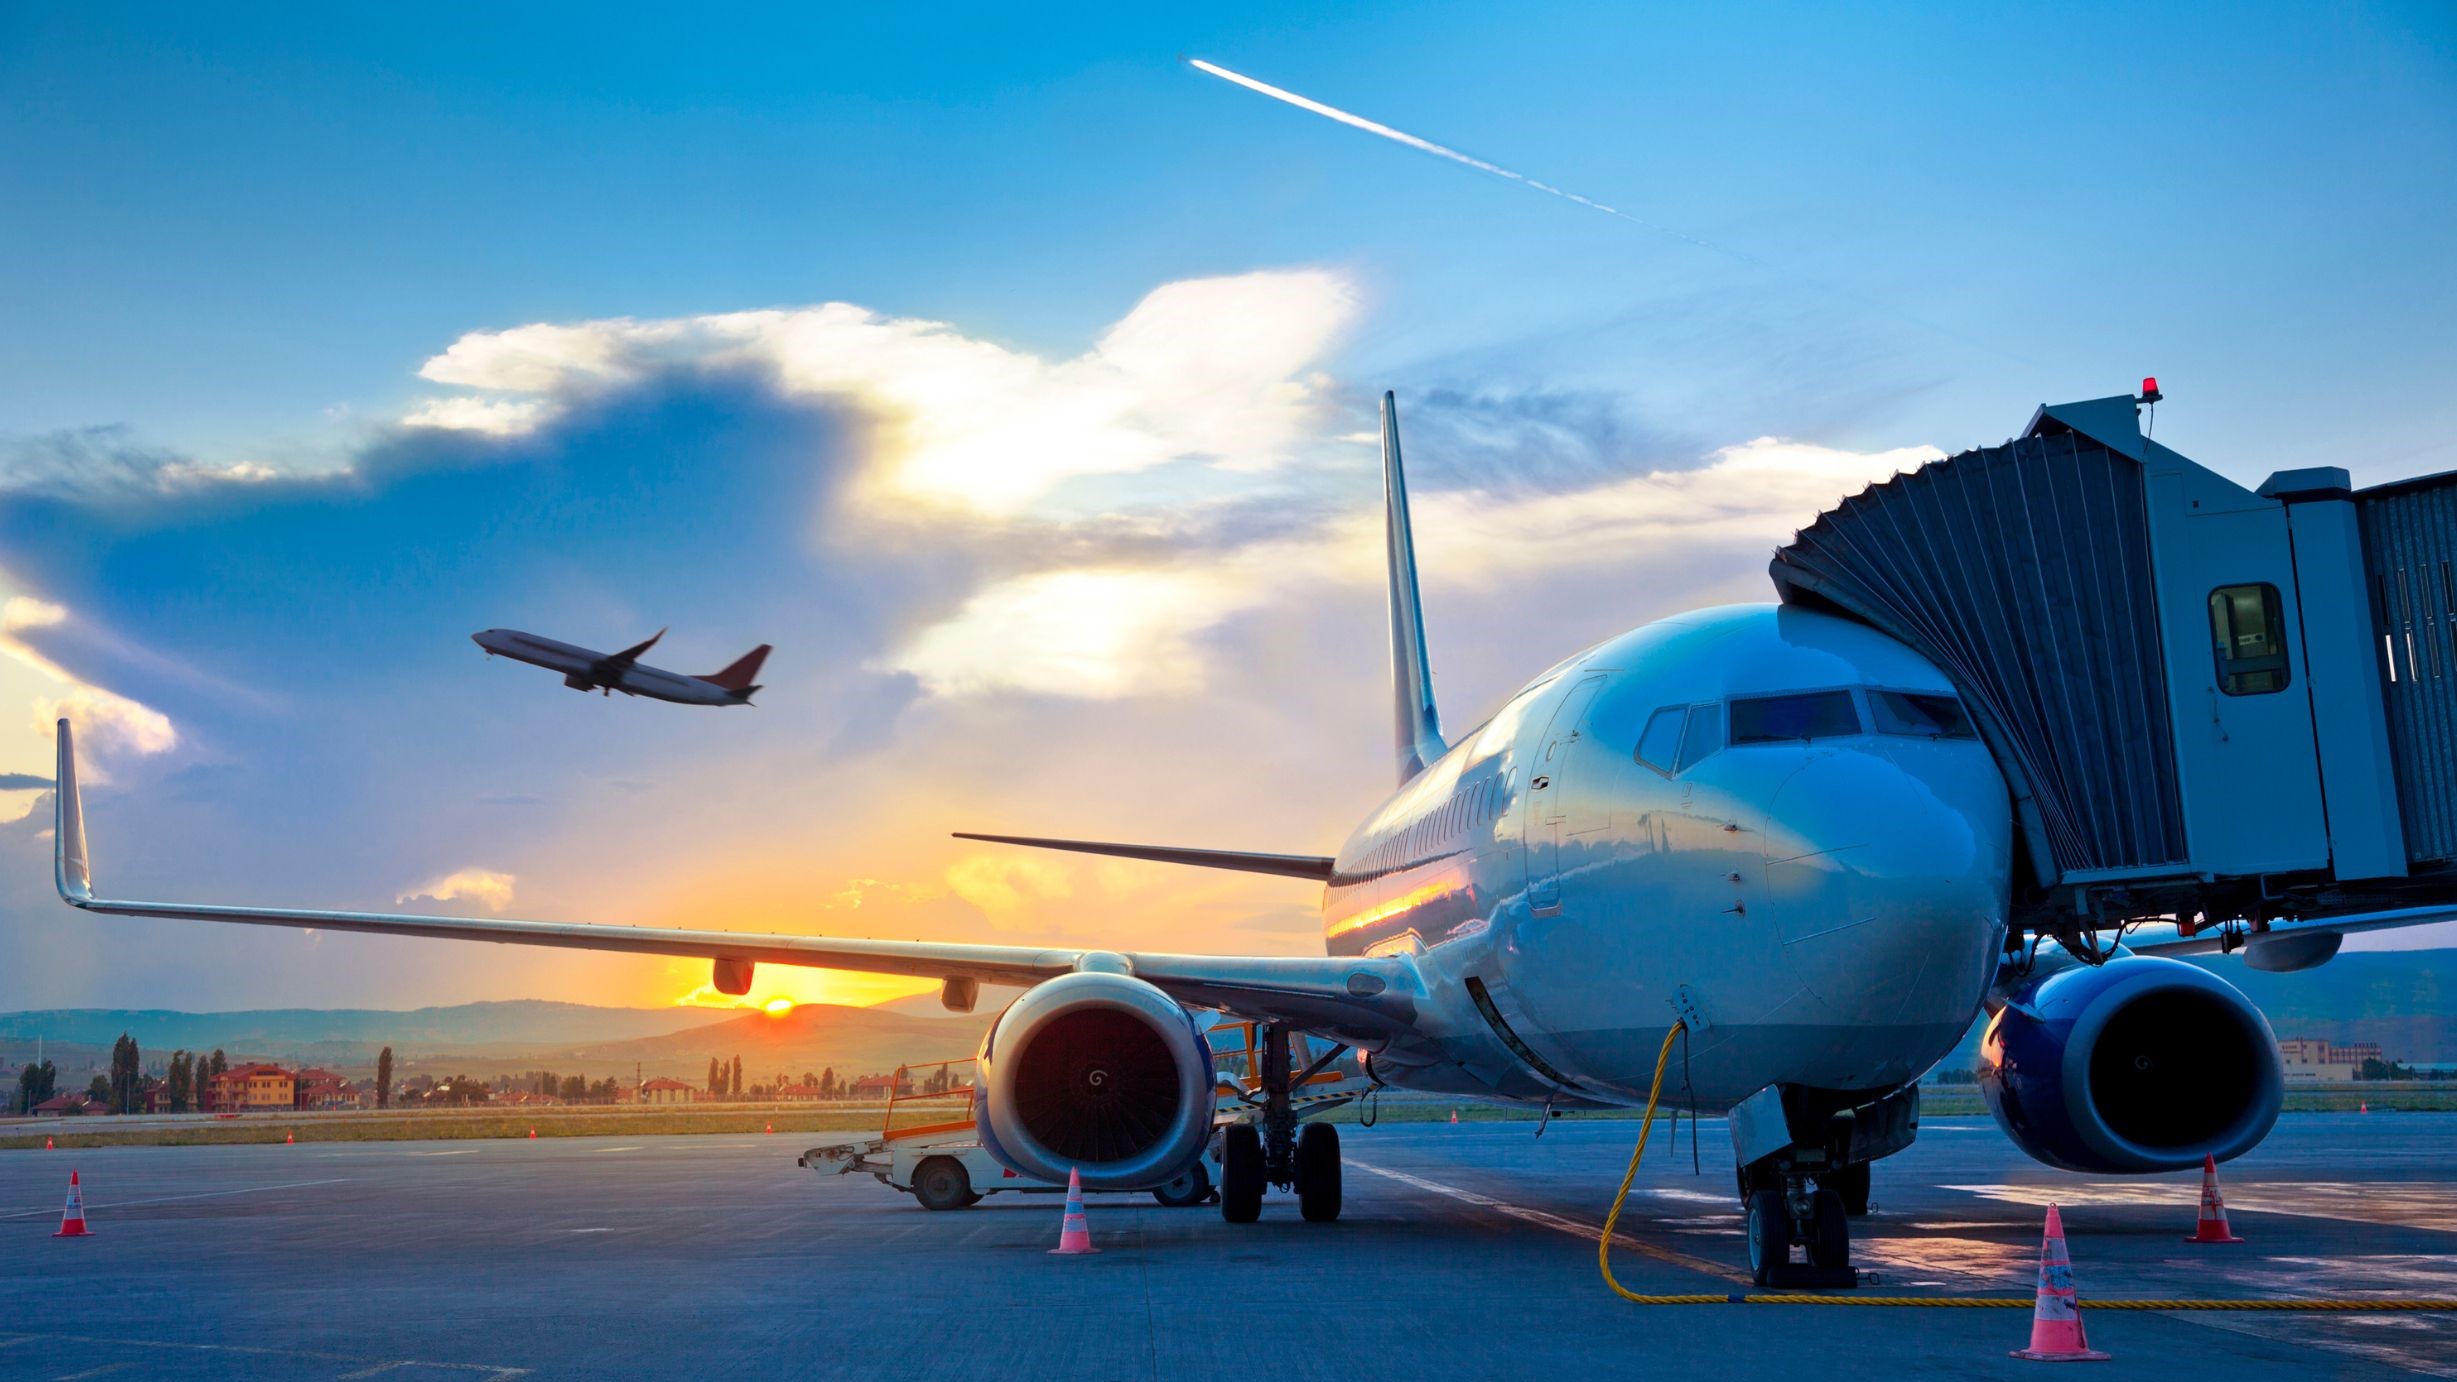 Trafic aérien : l’ONDA table sur plus de 30 millions de passagers en 2024